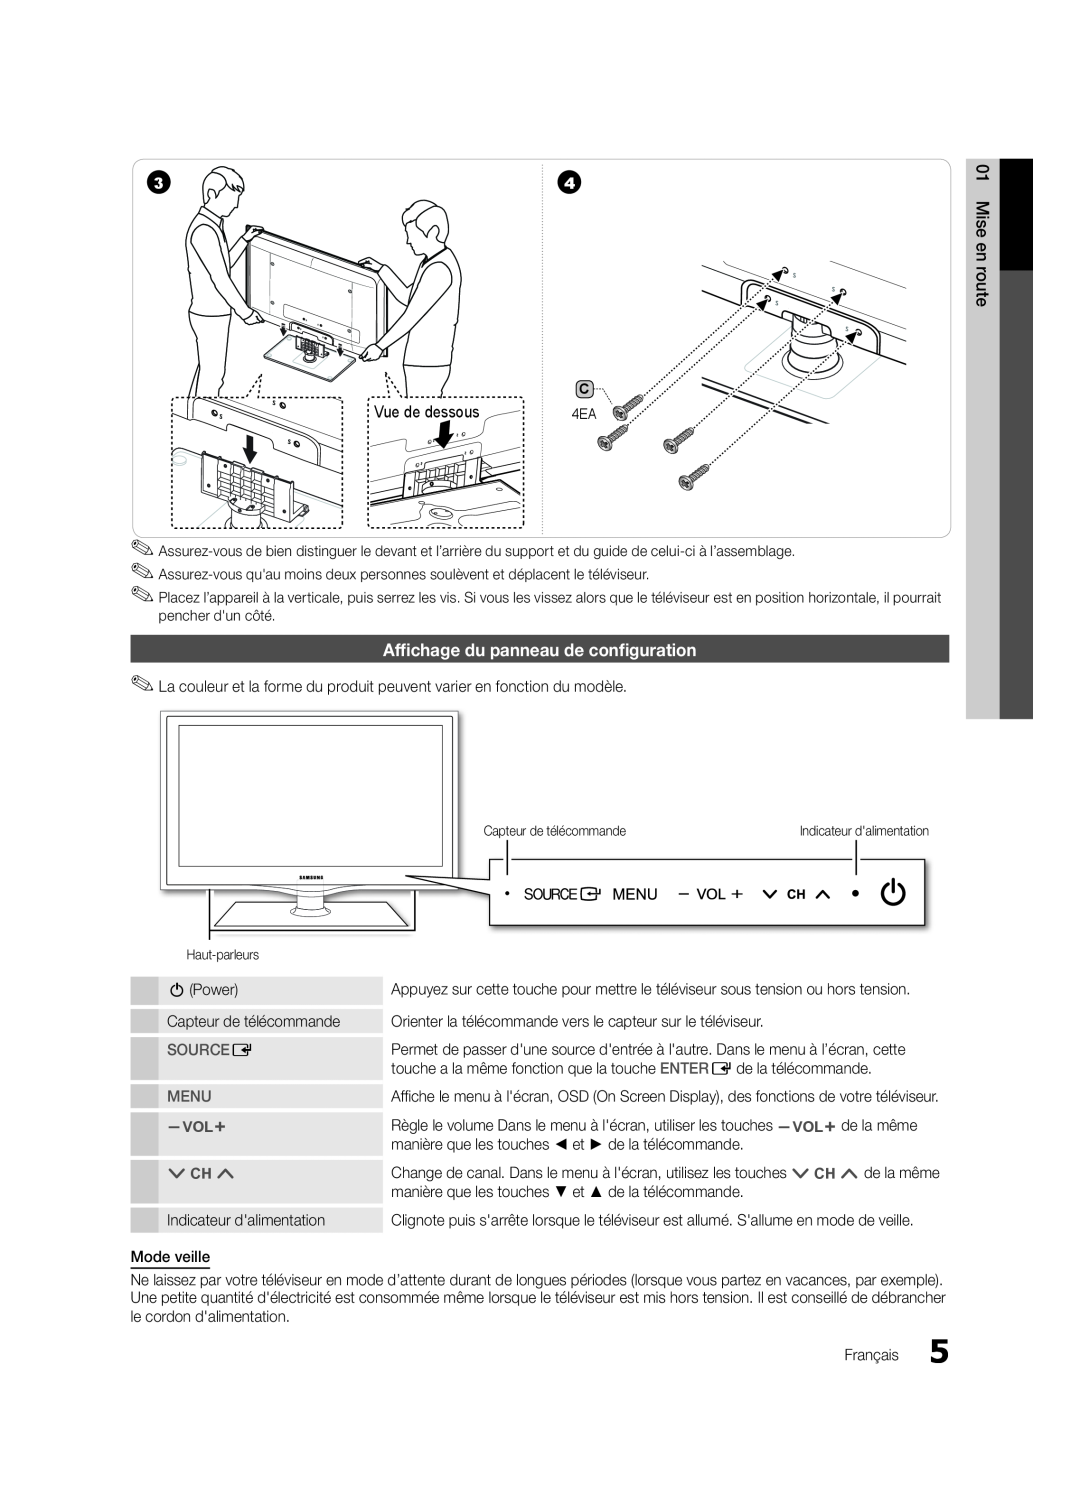 Samsung LN32C550 user manual Vue de dessous, Affichage du panneau de configuration, Source E, Menu 